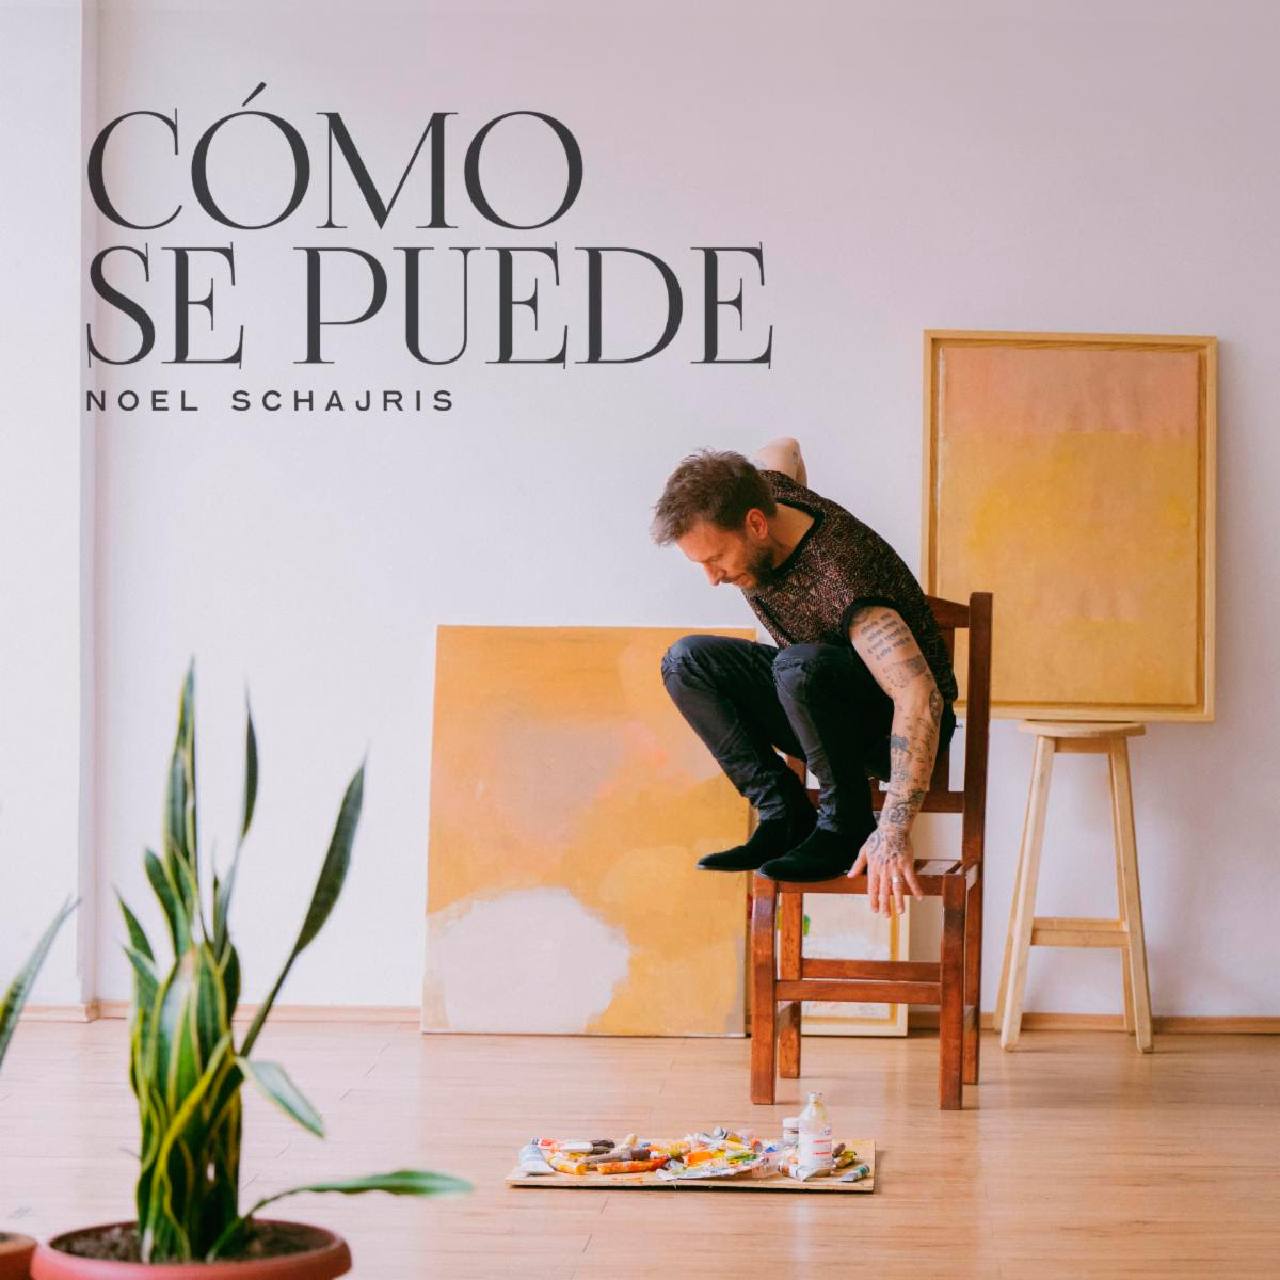 Noel Schajris lanza su nuevo sencillo «Cómo se puede»